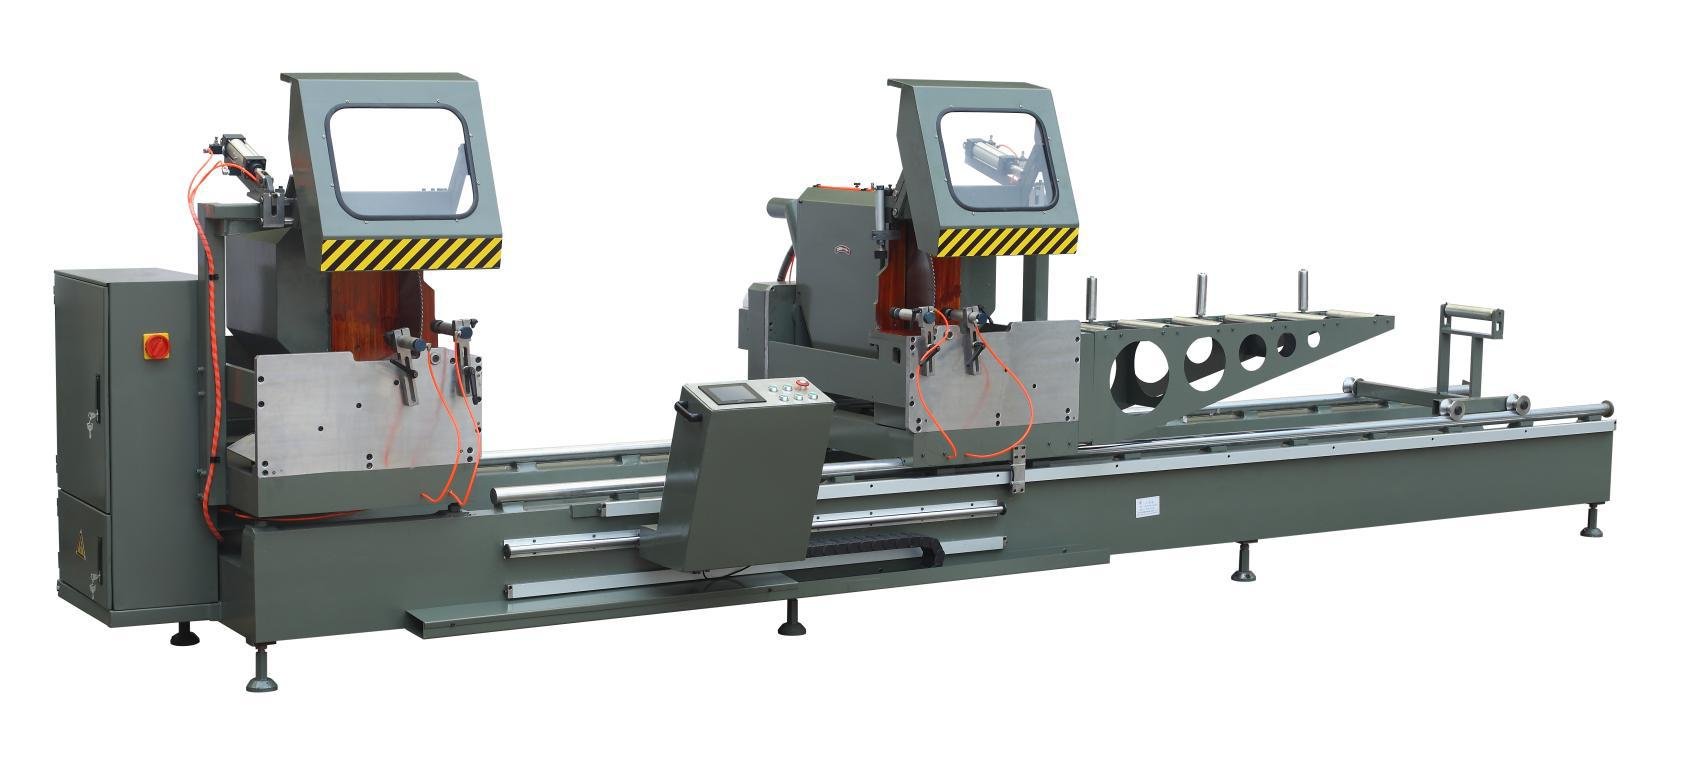 kingtool aluminium machinery Array image435